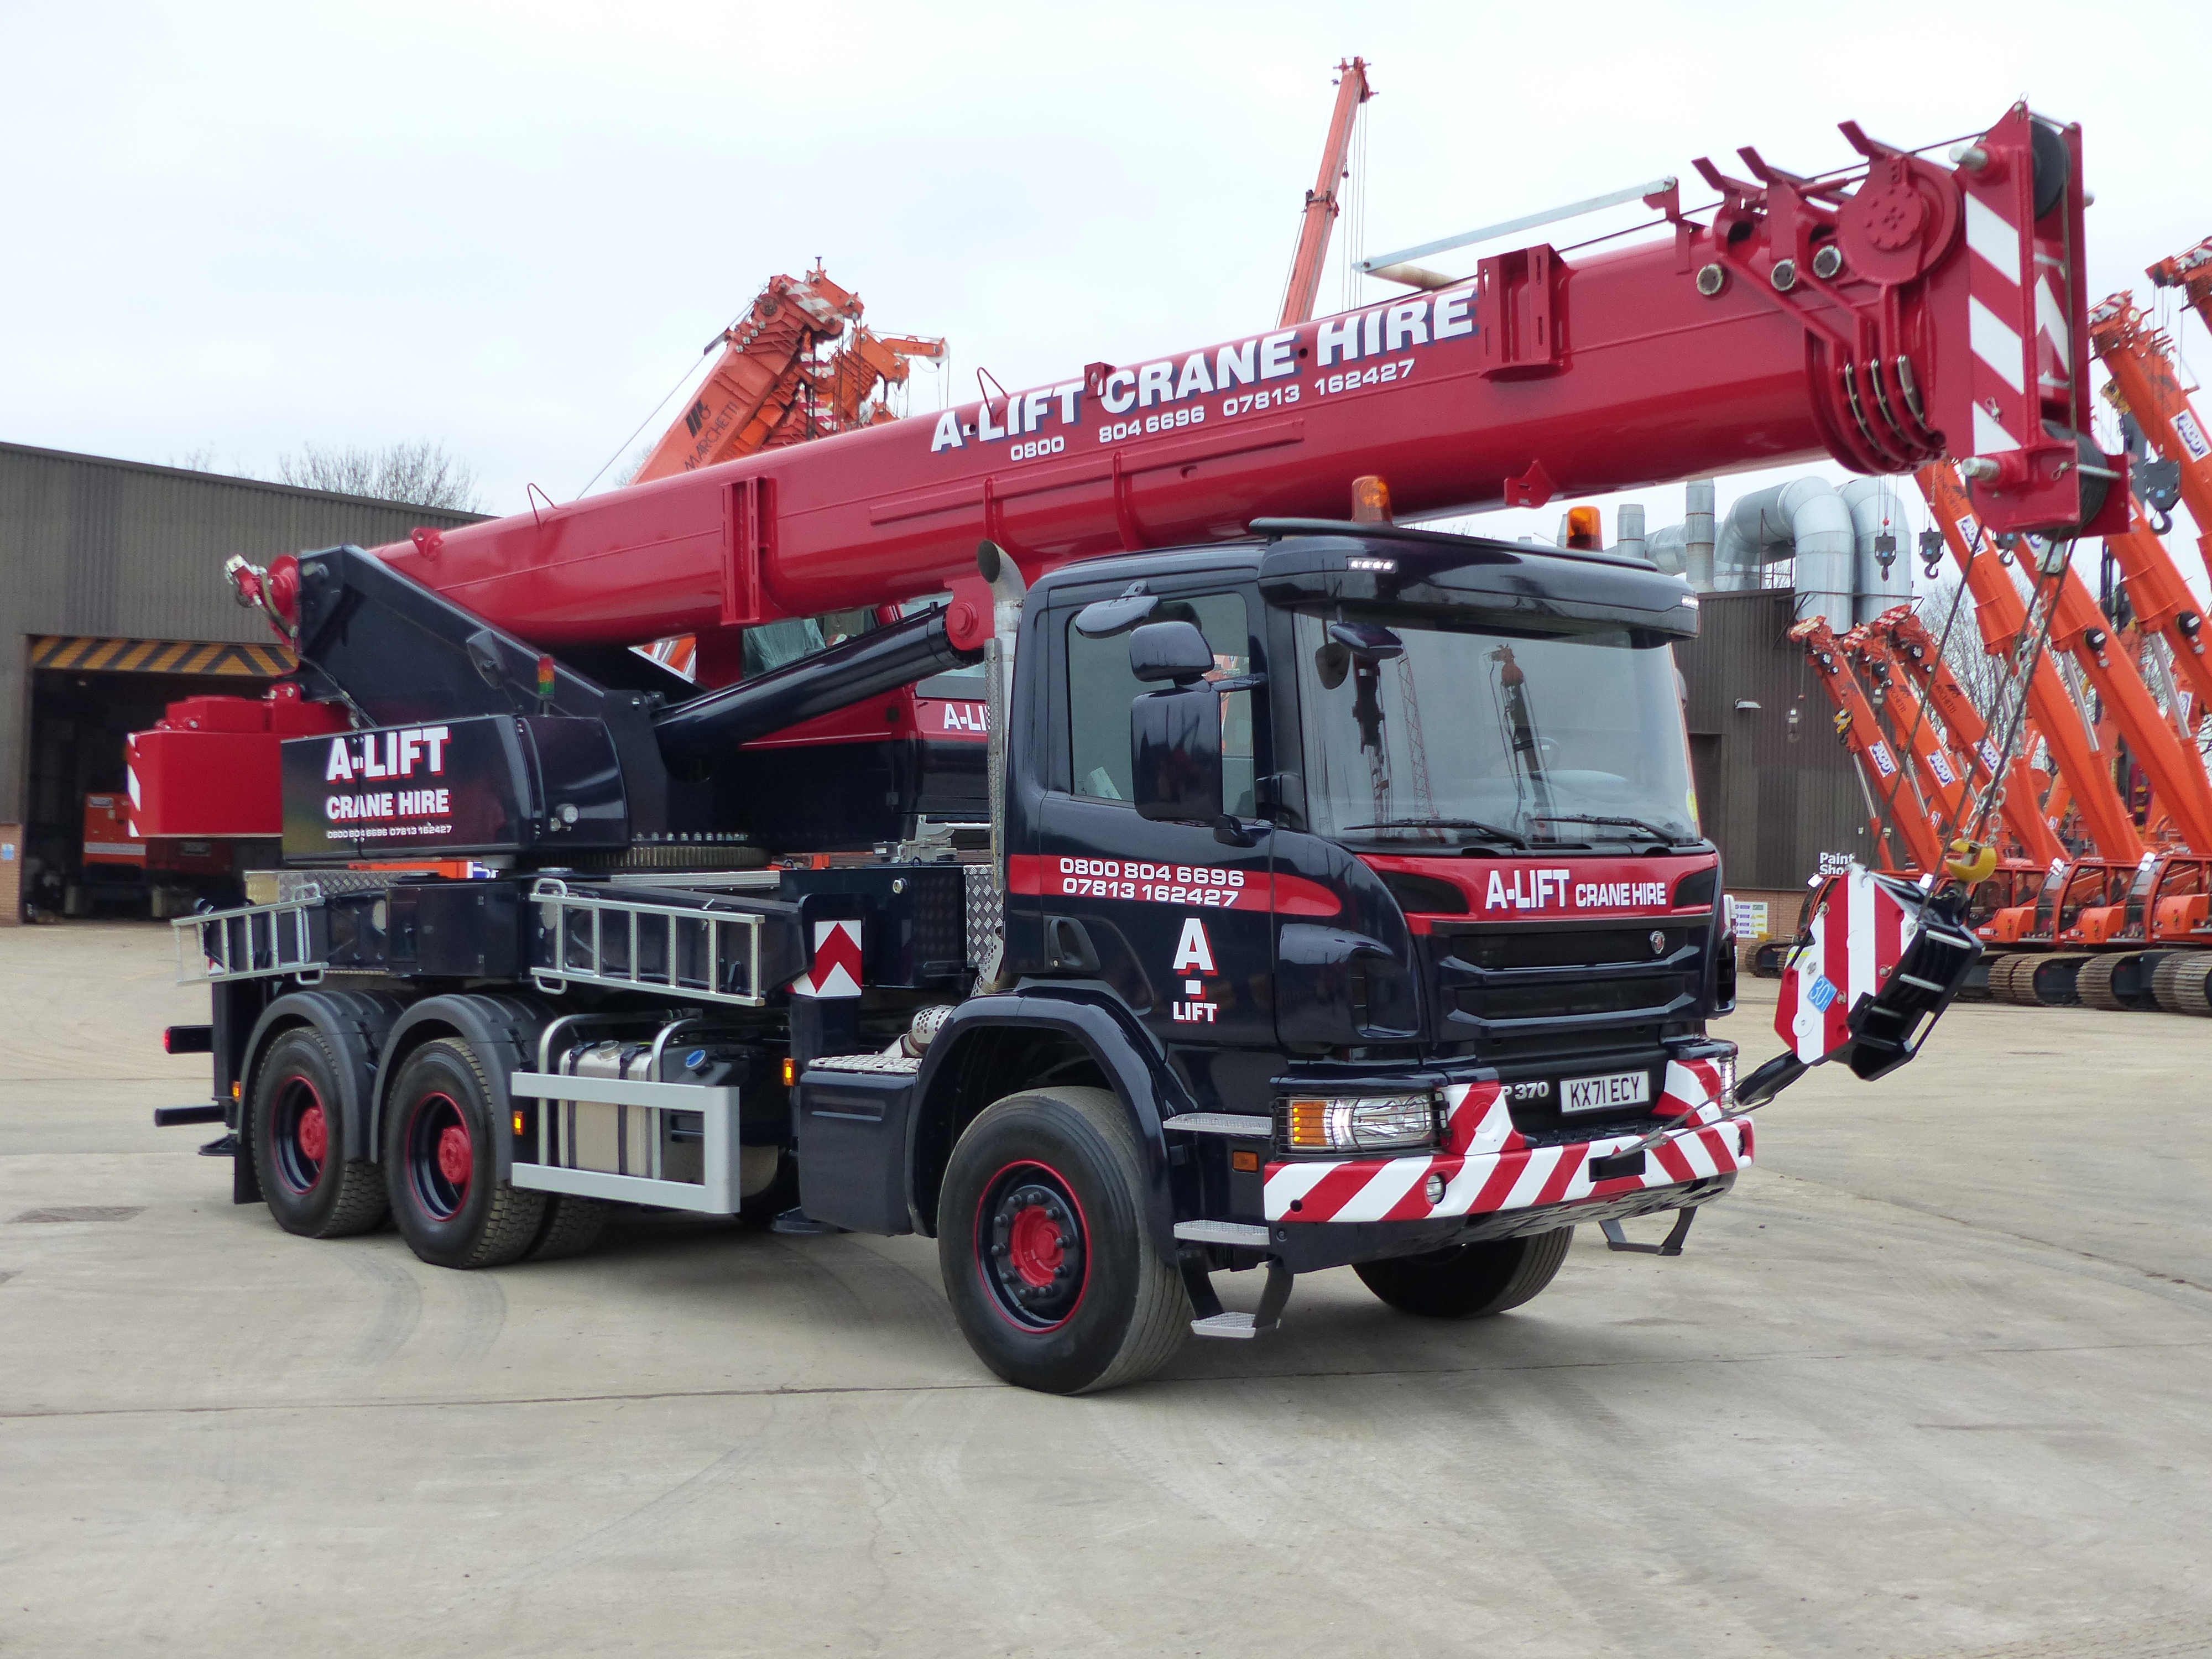 Marchetti MTK40 truck crane sold to A-Lift Crane Hire